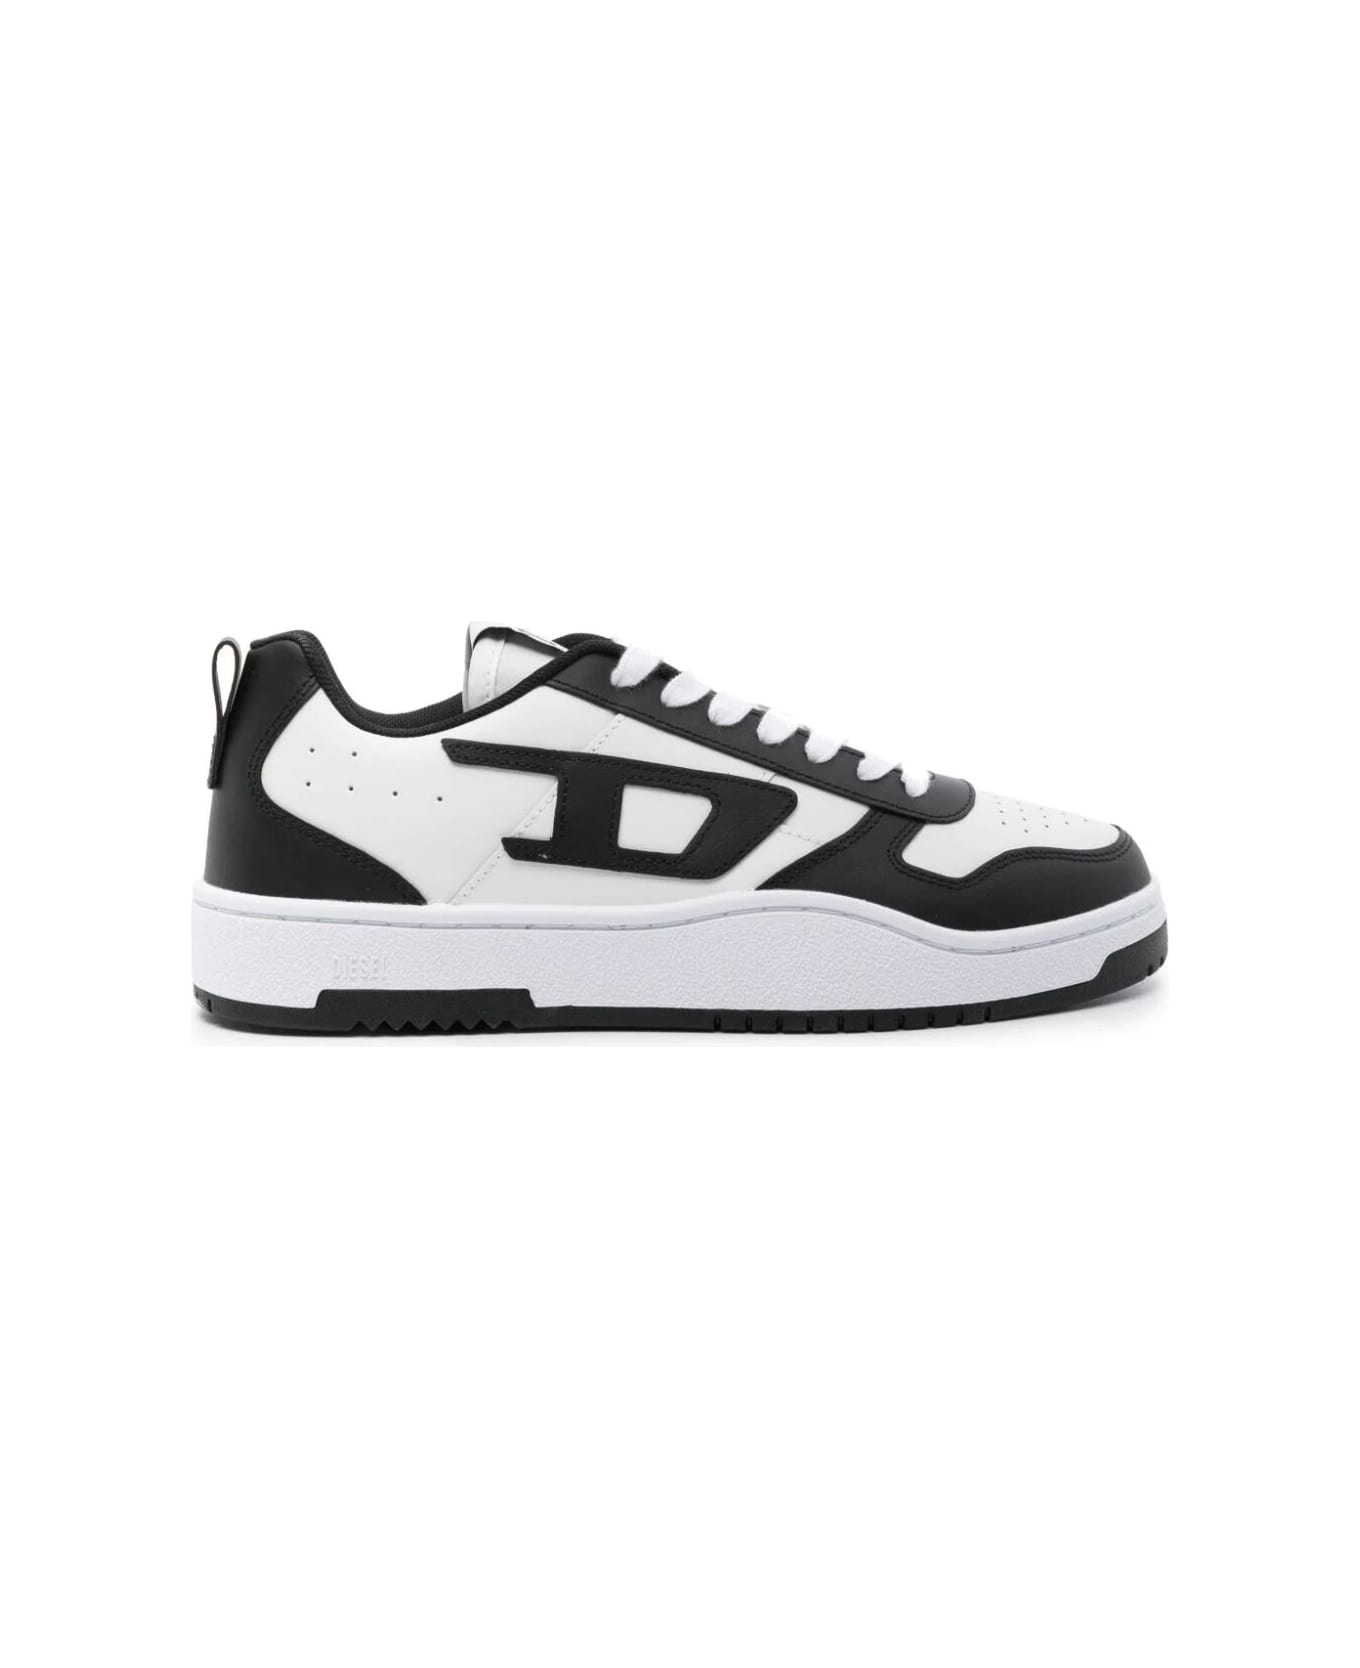 Diesel Ukiyo V2 Low Sneakers - White Black